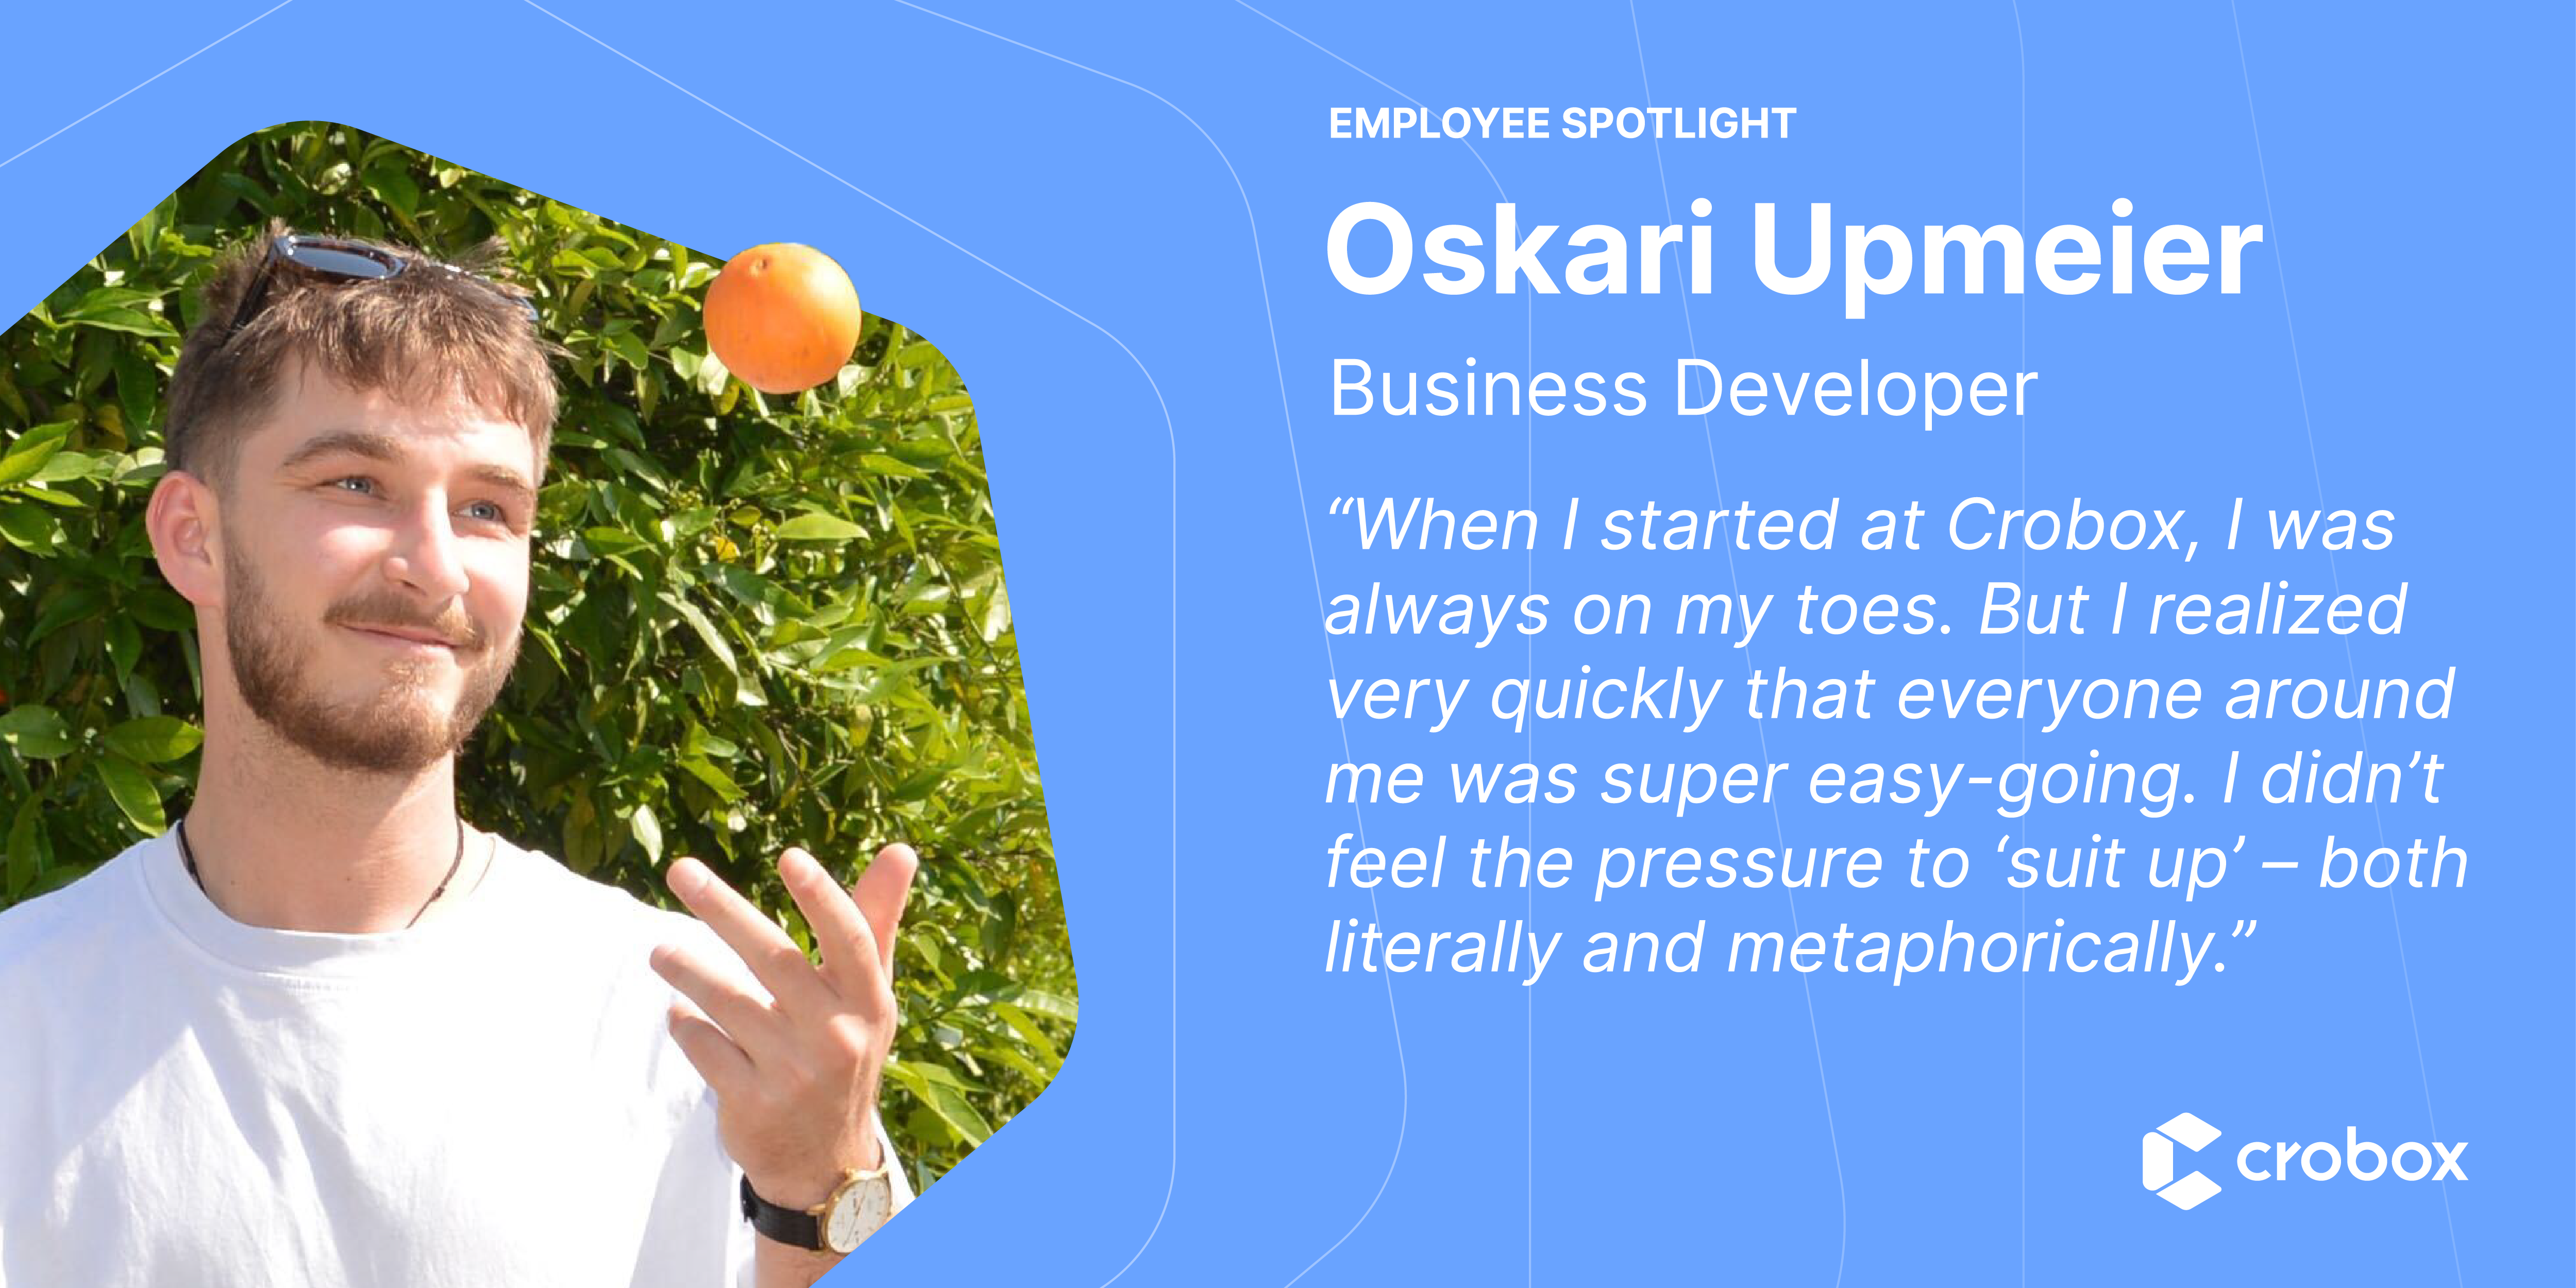 Employee Spotlight: Oskari Upmeier, Business Developer